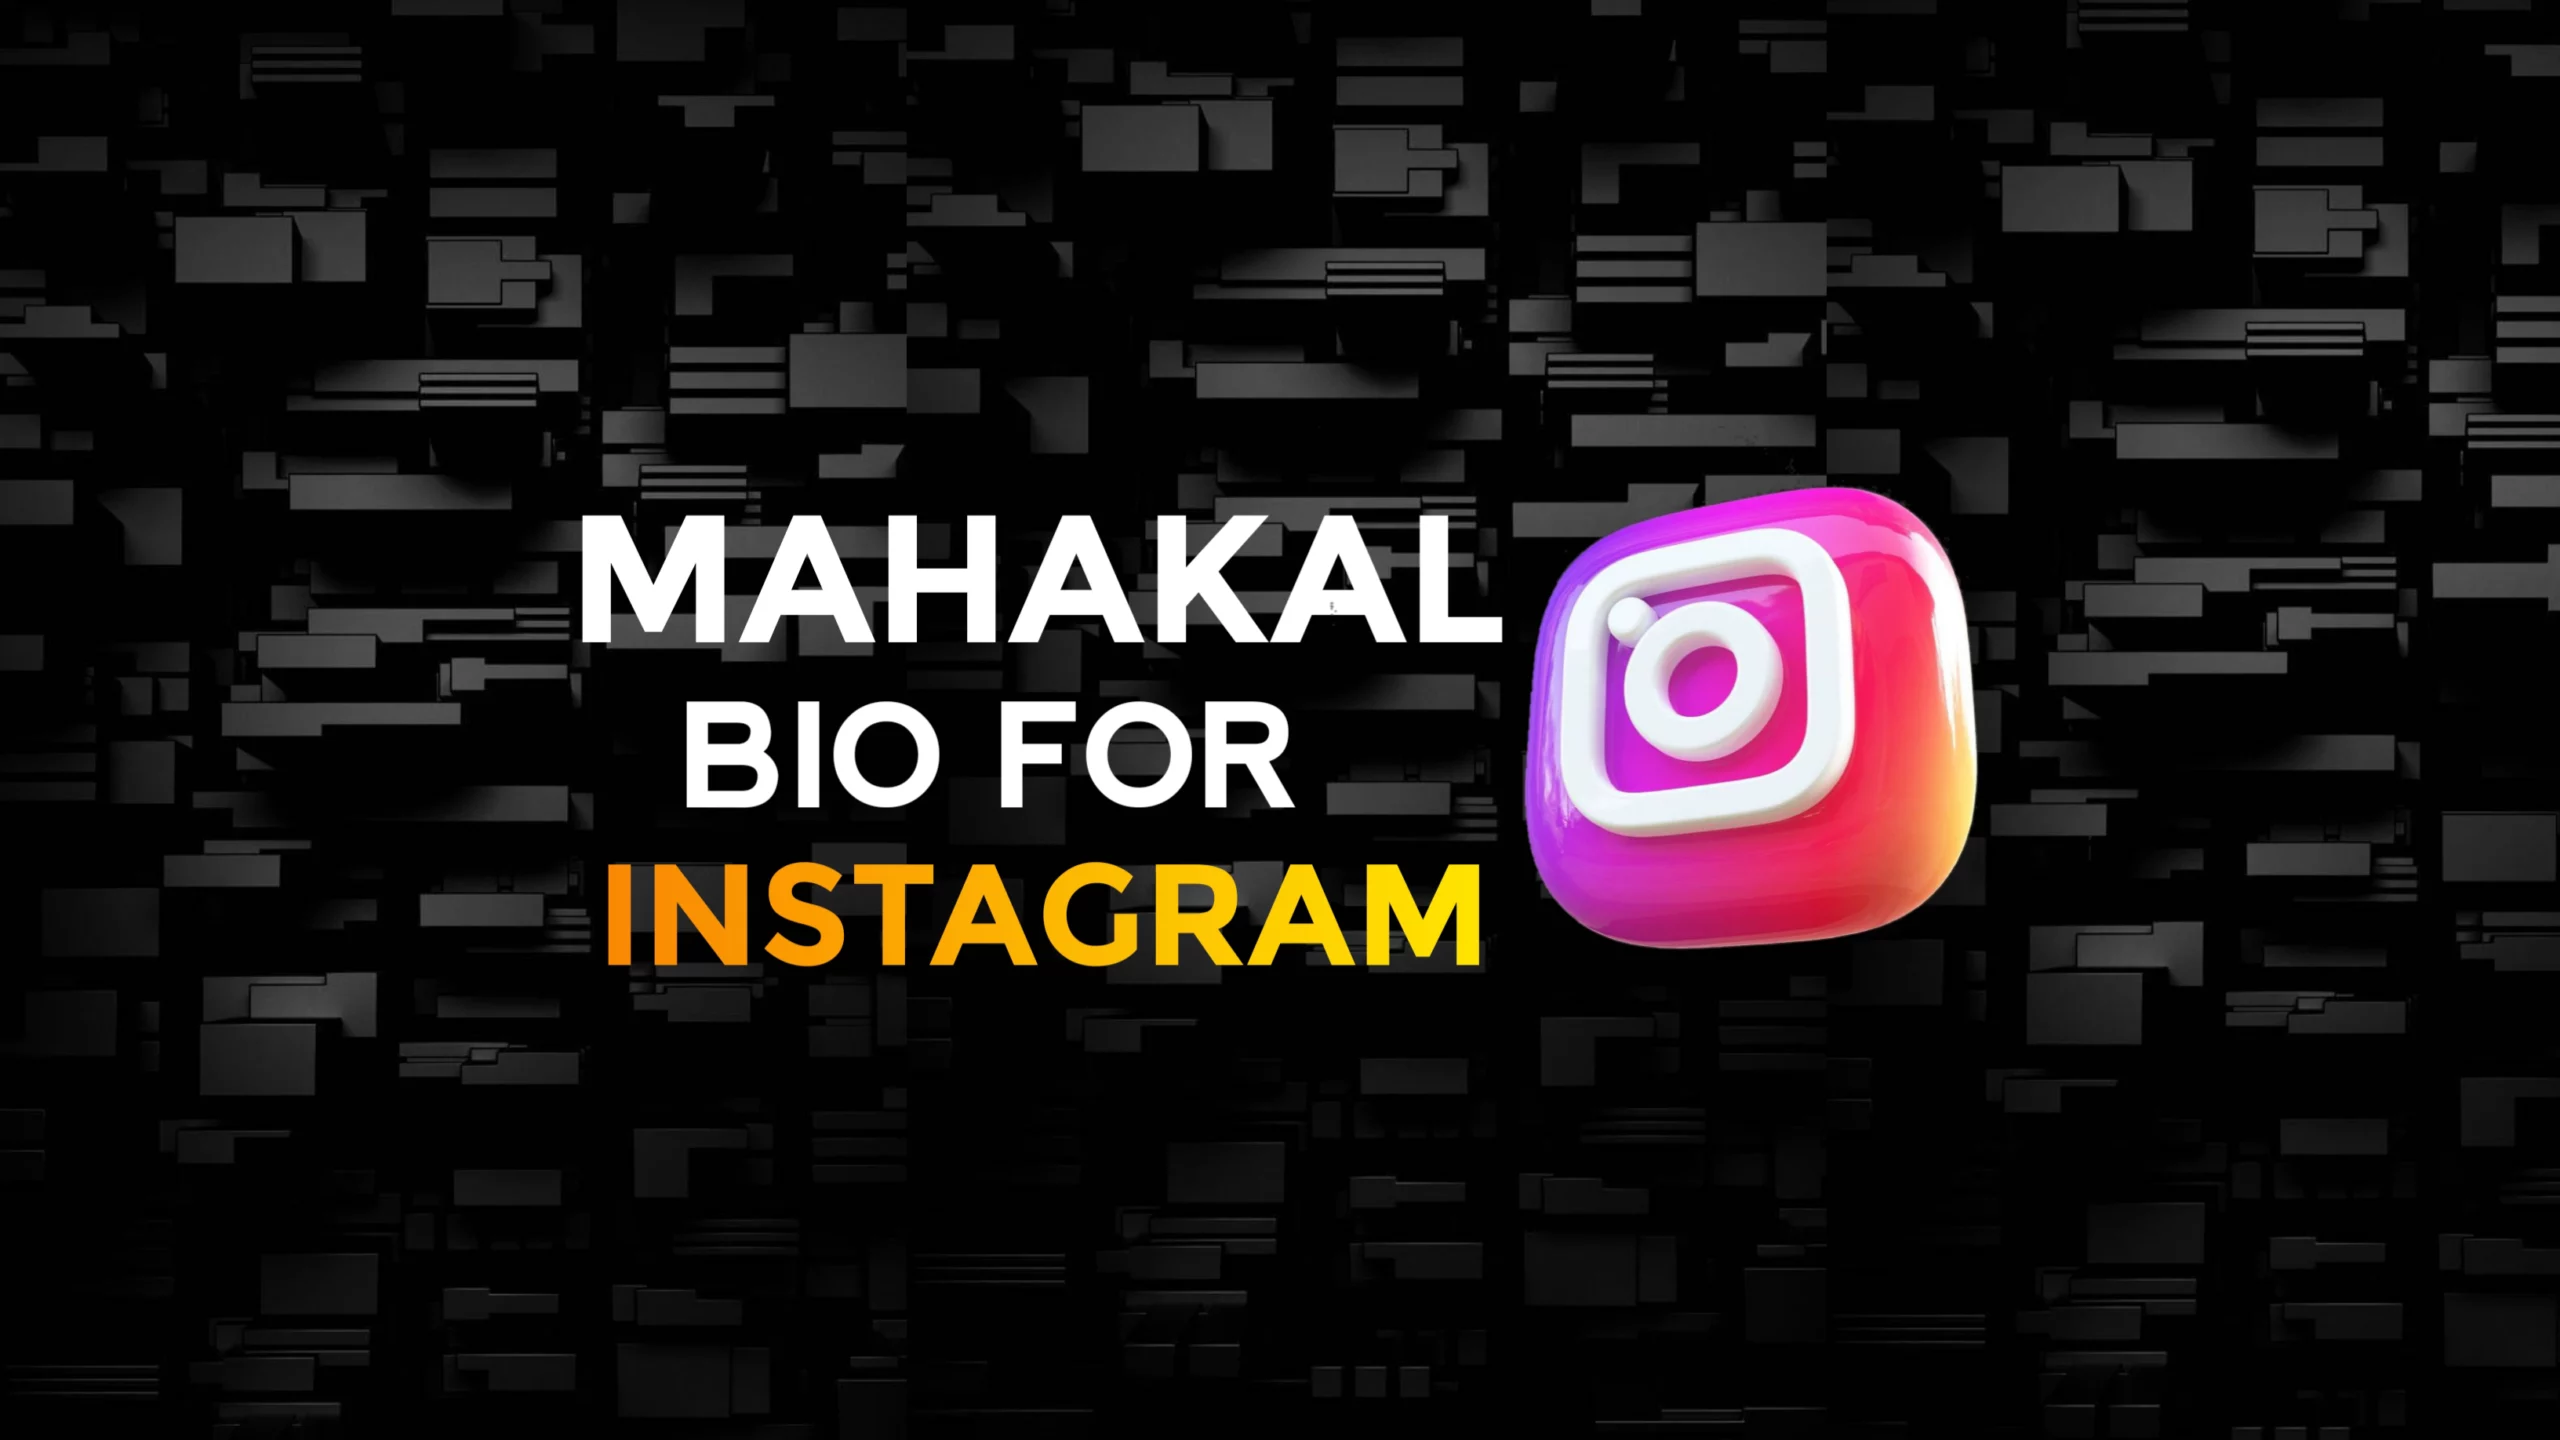 Mahakal Bio For Instagram In English&Mahadev Bio For Instagram